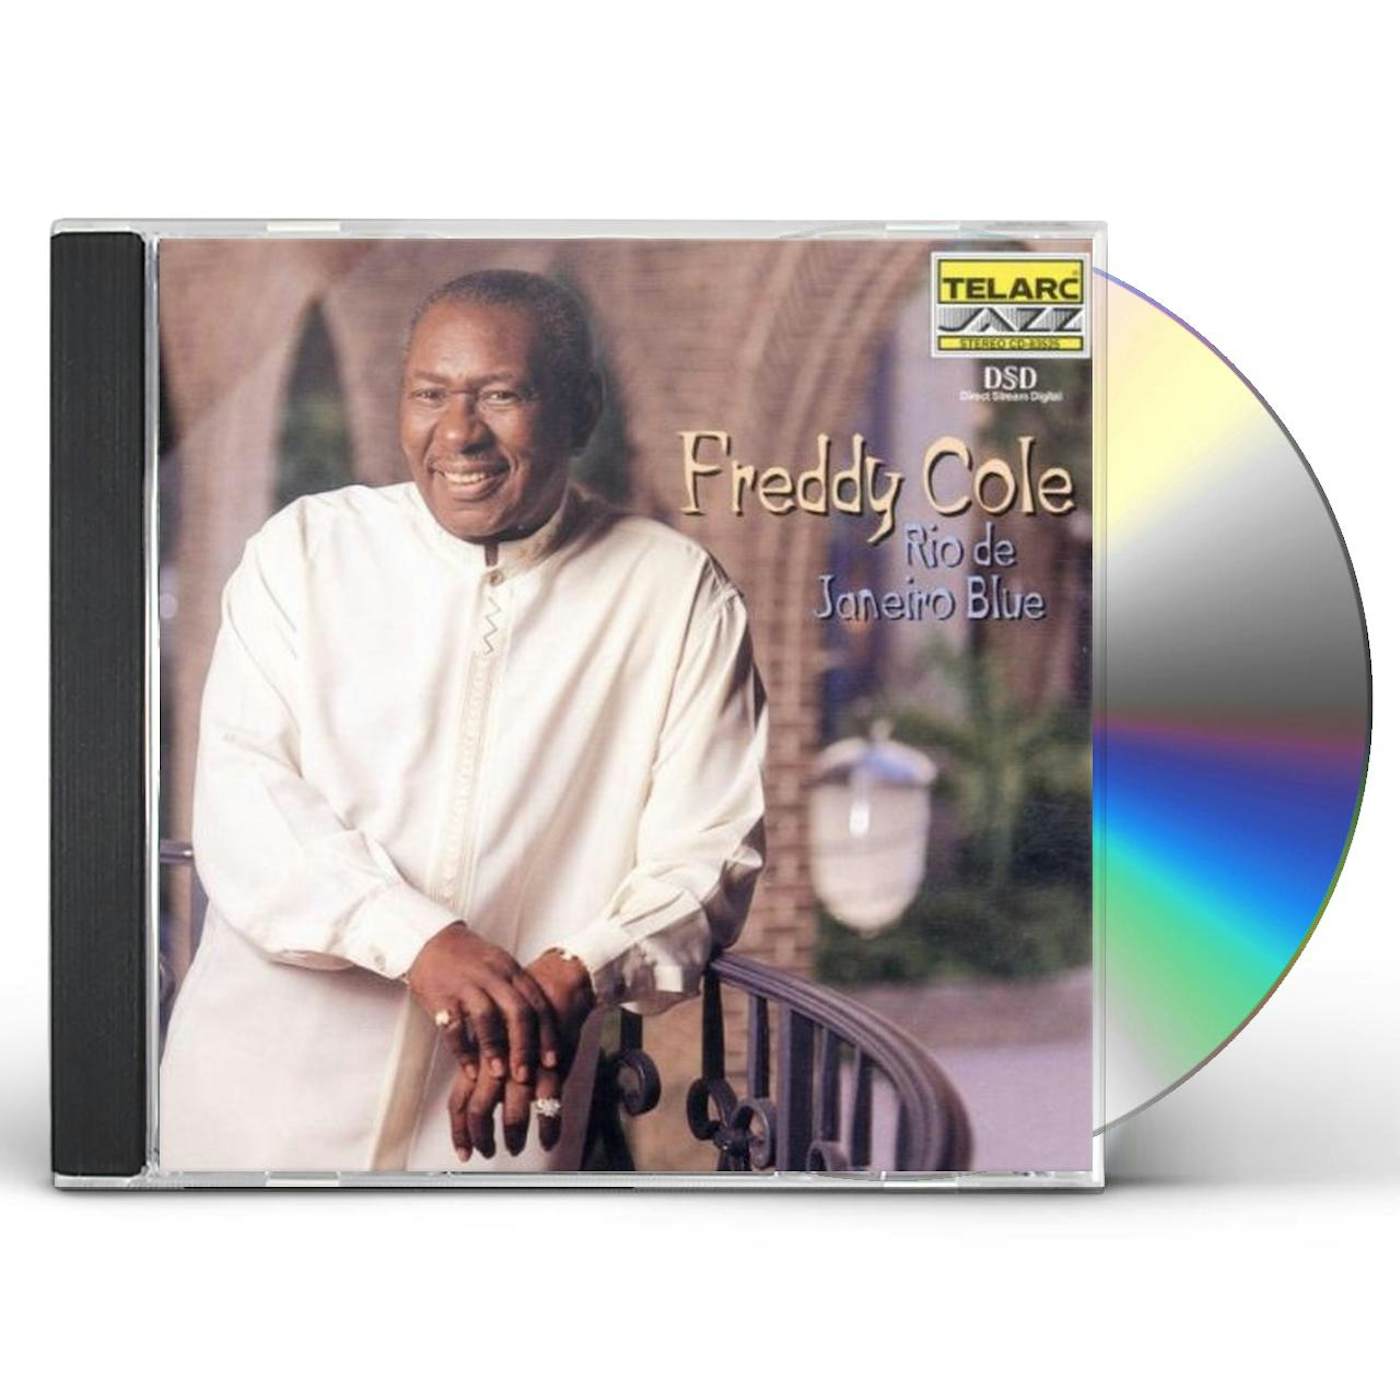 Freddy Cole RIO DE JANEIRO BLUE CD